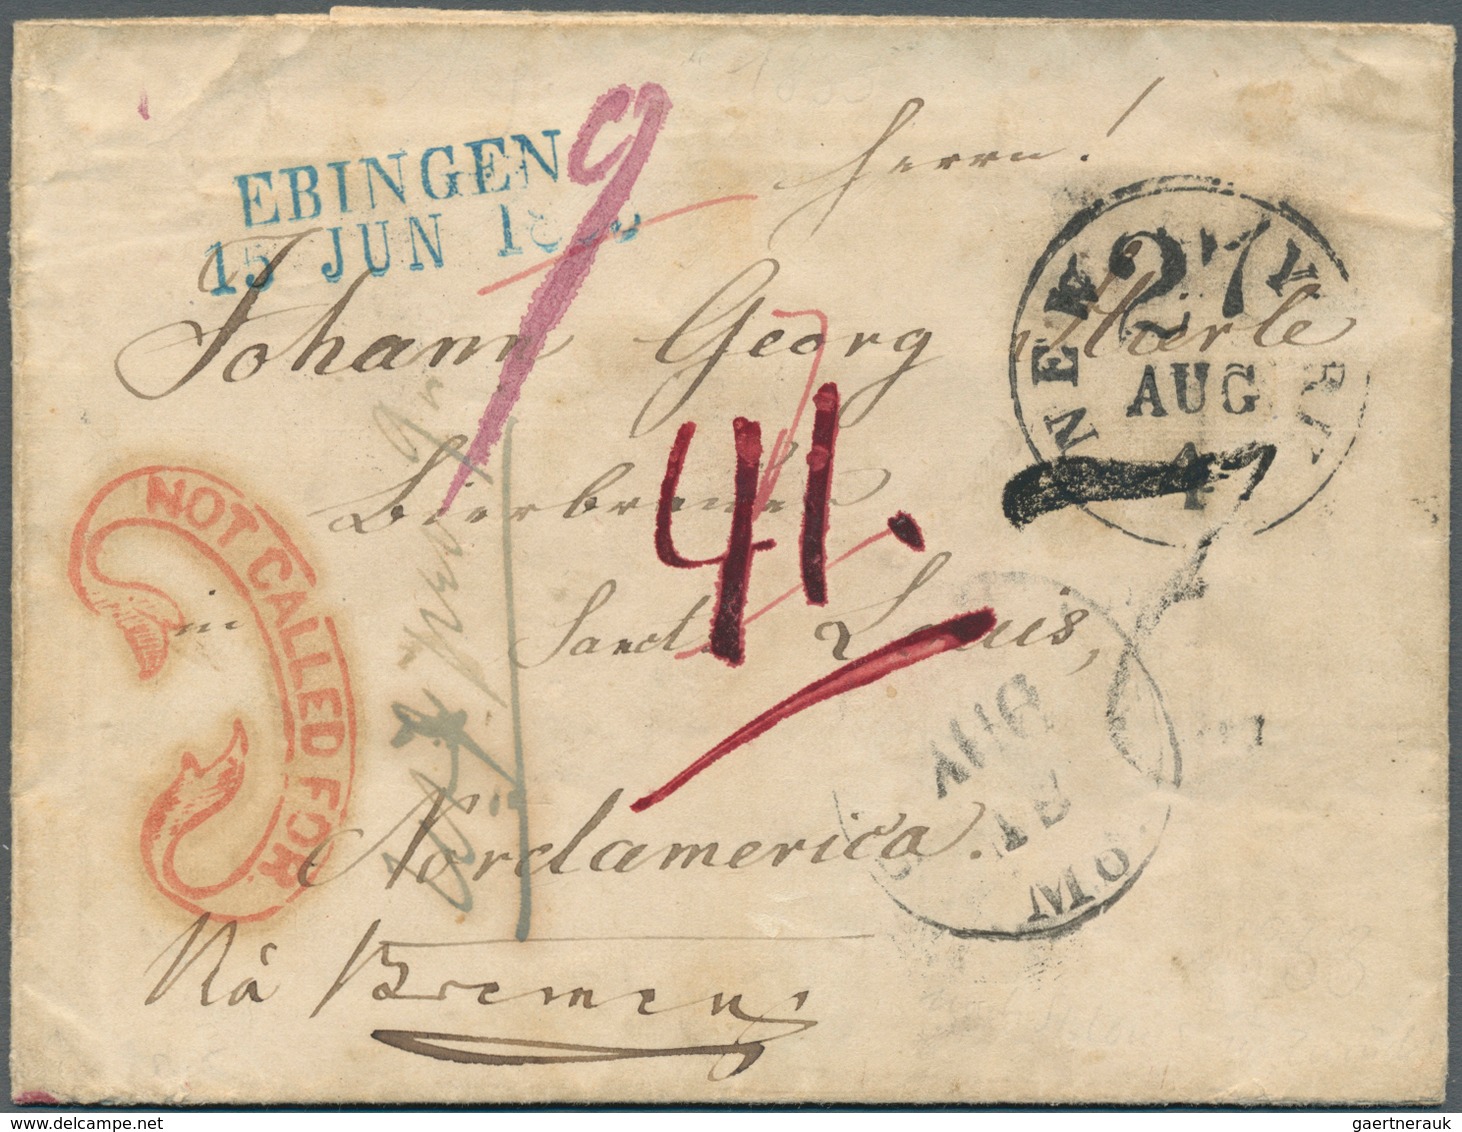 31251 Bremen - Marken und Briefe: 1849/1875, interessante Sammlung "Briefverkehr Bremen - USA" mit ca. 65